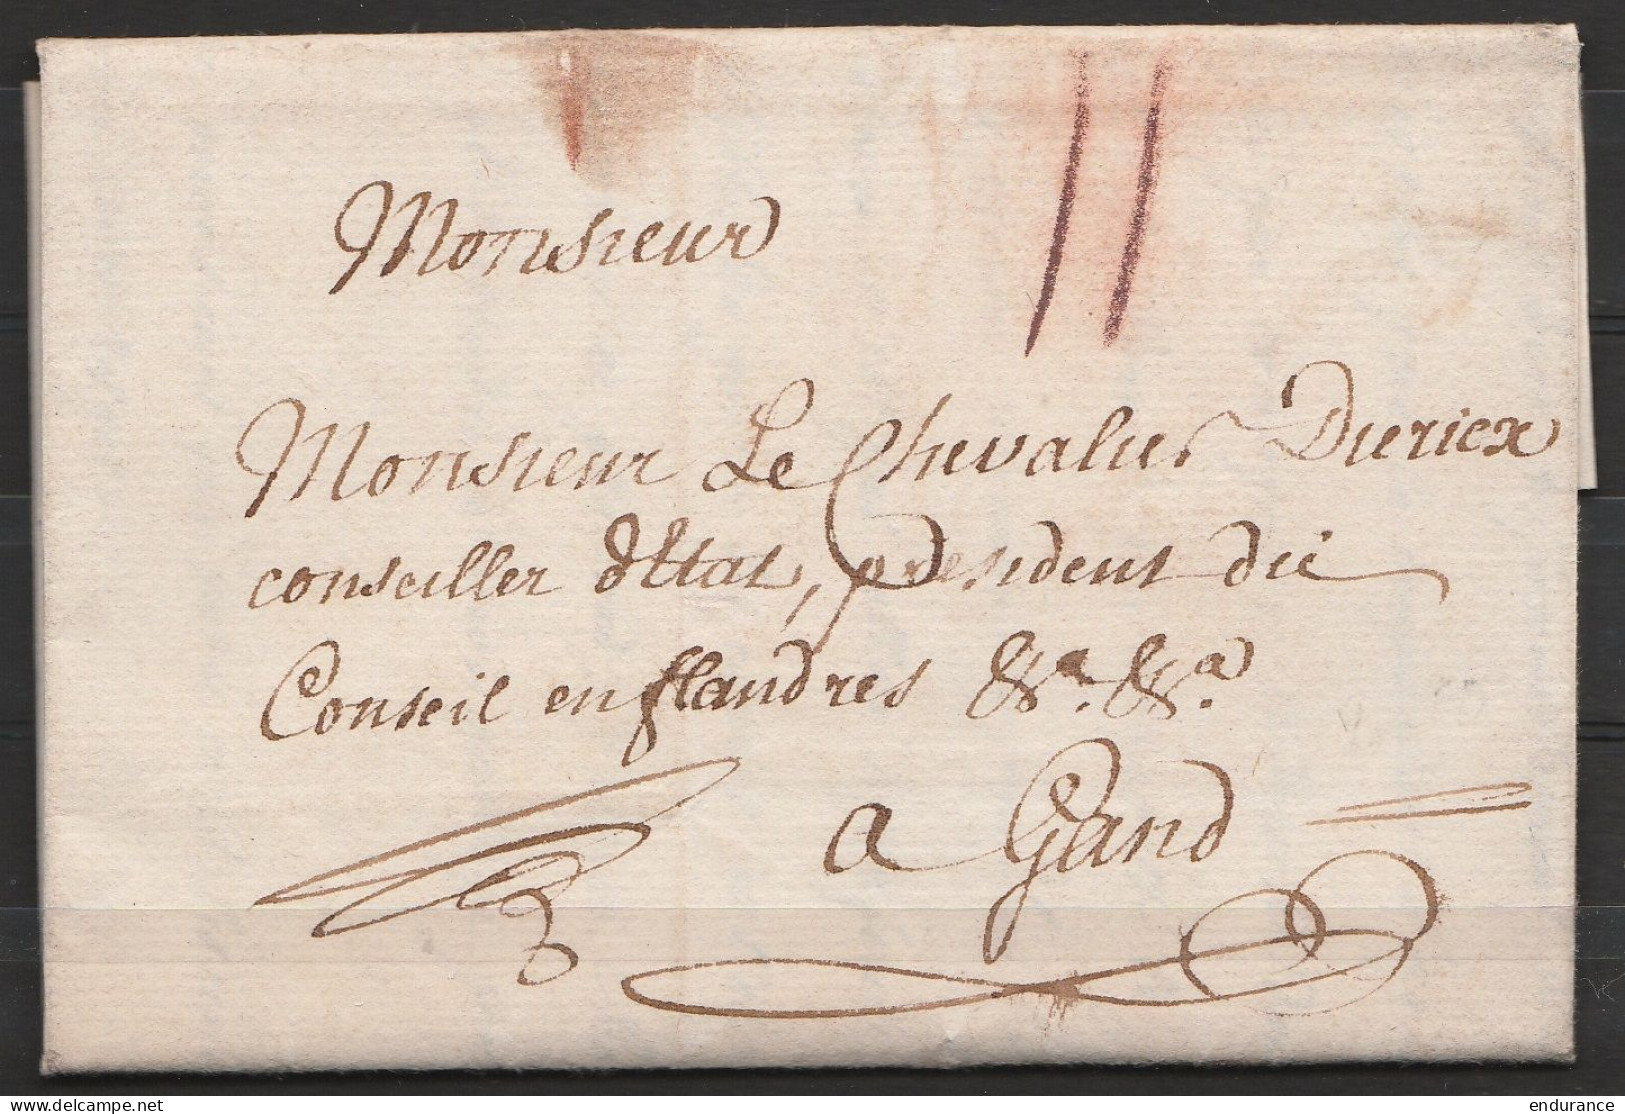 L. Datée 20 Juin 1783 De BRUXELLES Pour Chevalier Diericx, Conseiller D'Etat à GAND - Port "II" à La Craie Rouge - 1714-1794 (Paises Bajos Austriacos)